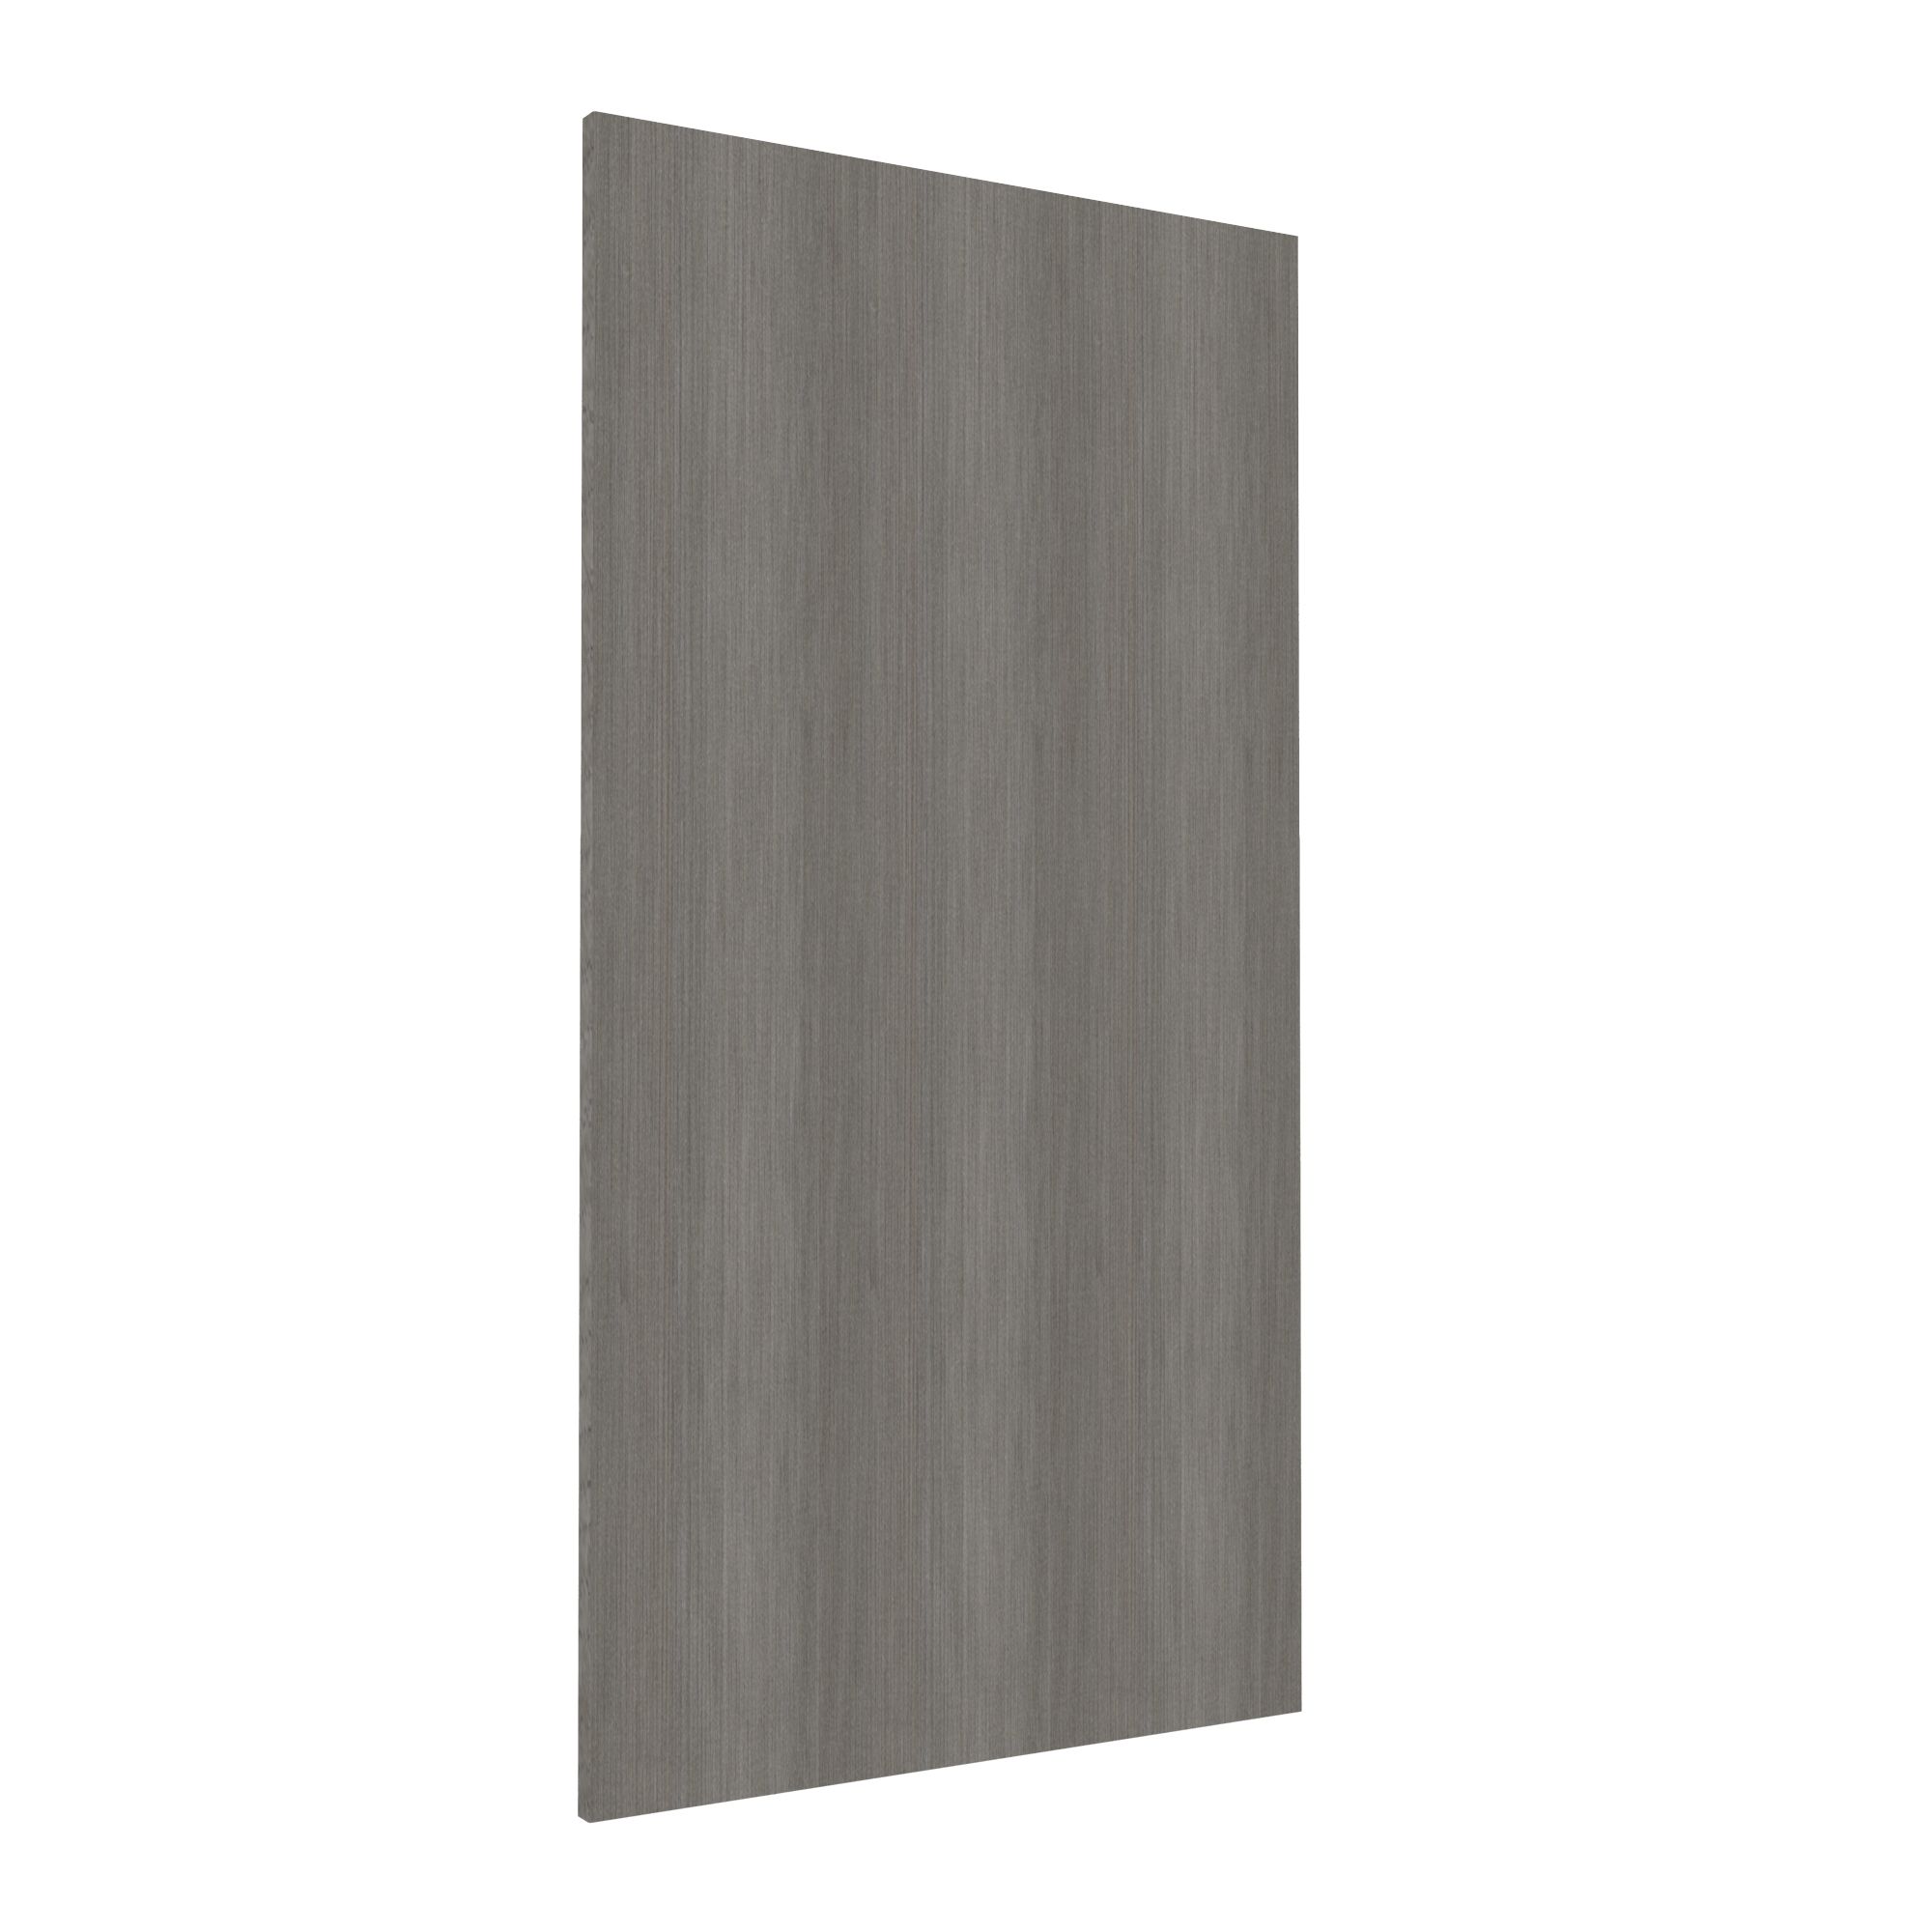 Form Darwin Grey oak effect Chipboard Cabinet door (H)958mm (W)497mm